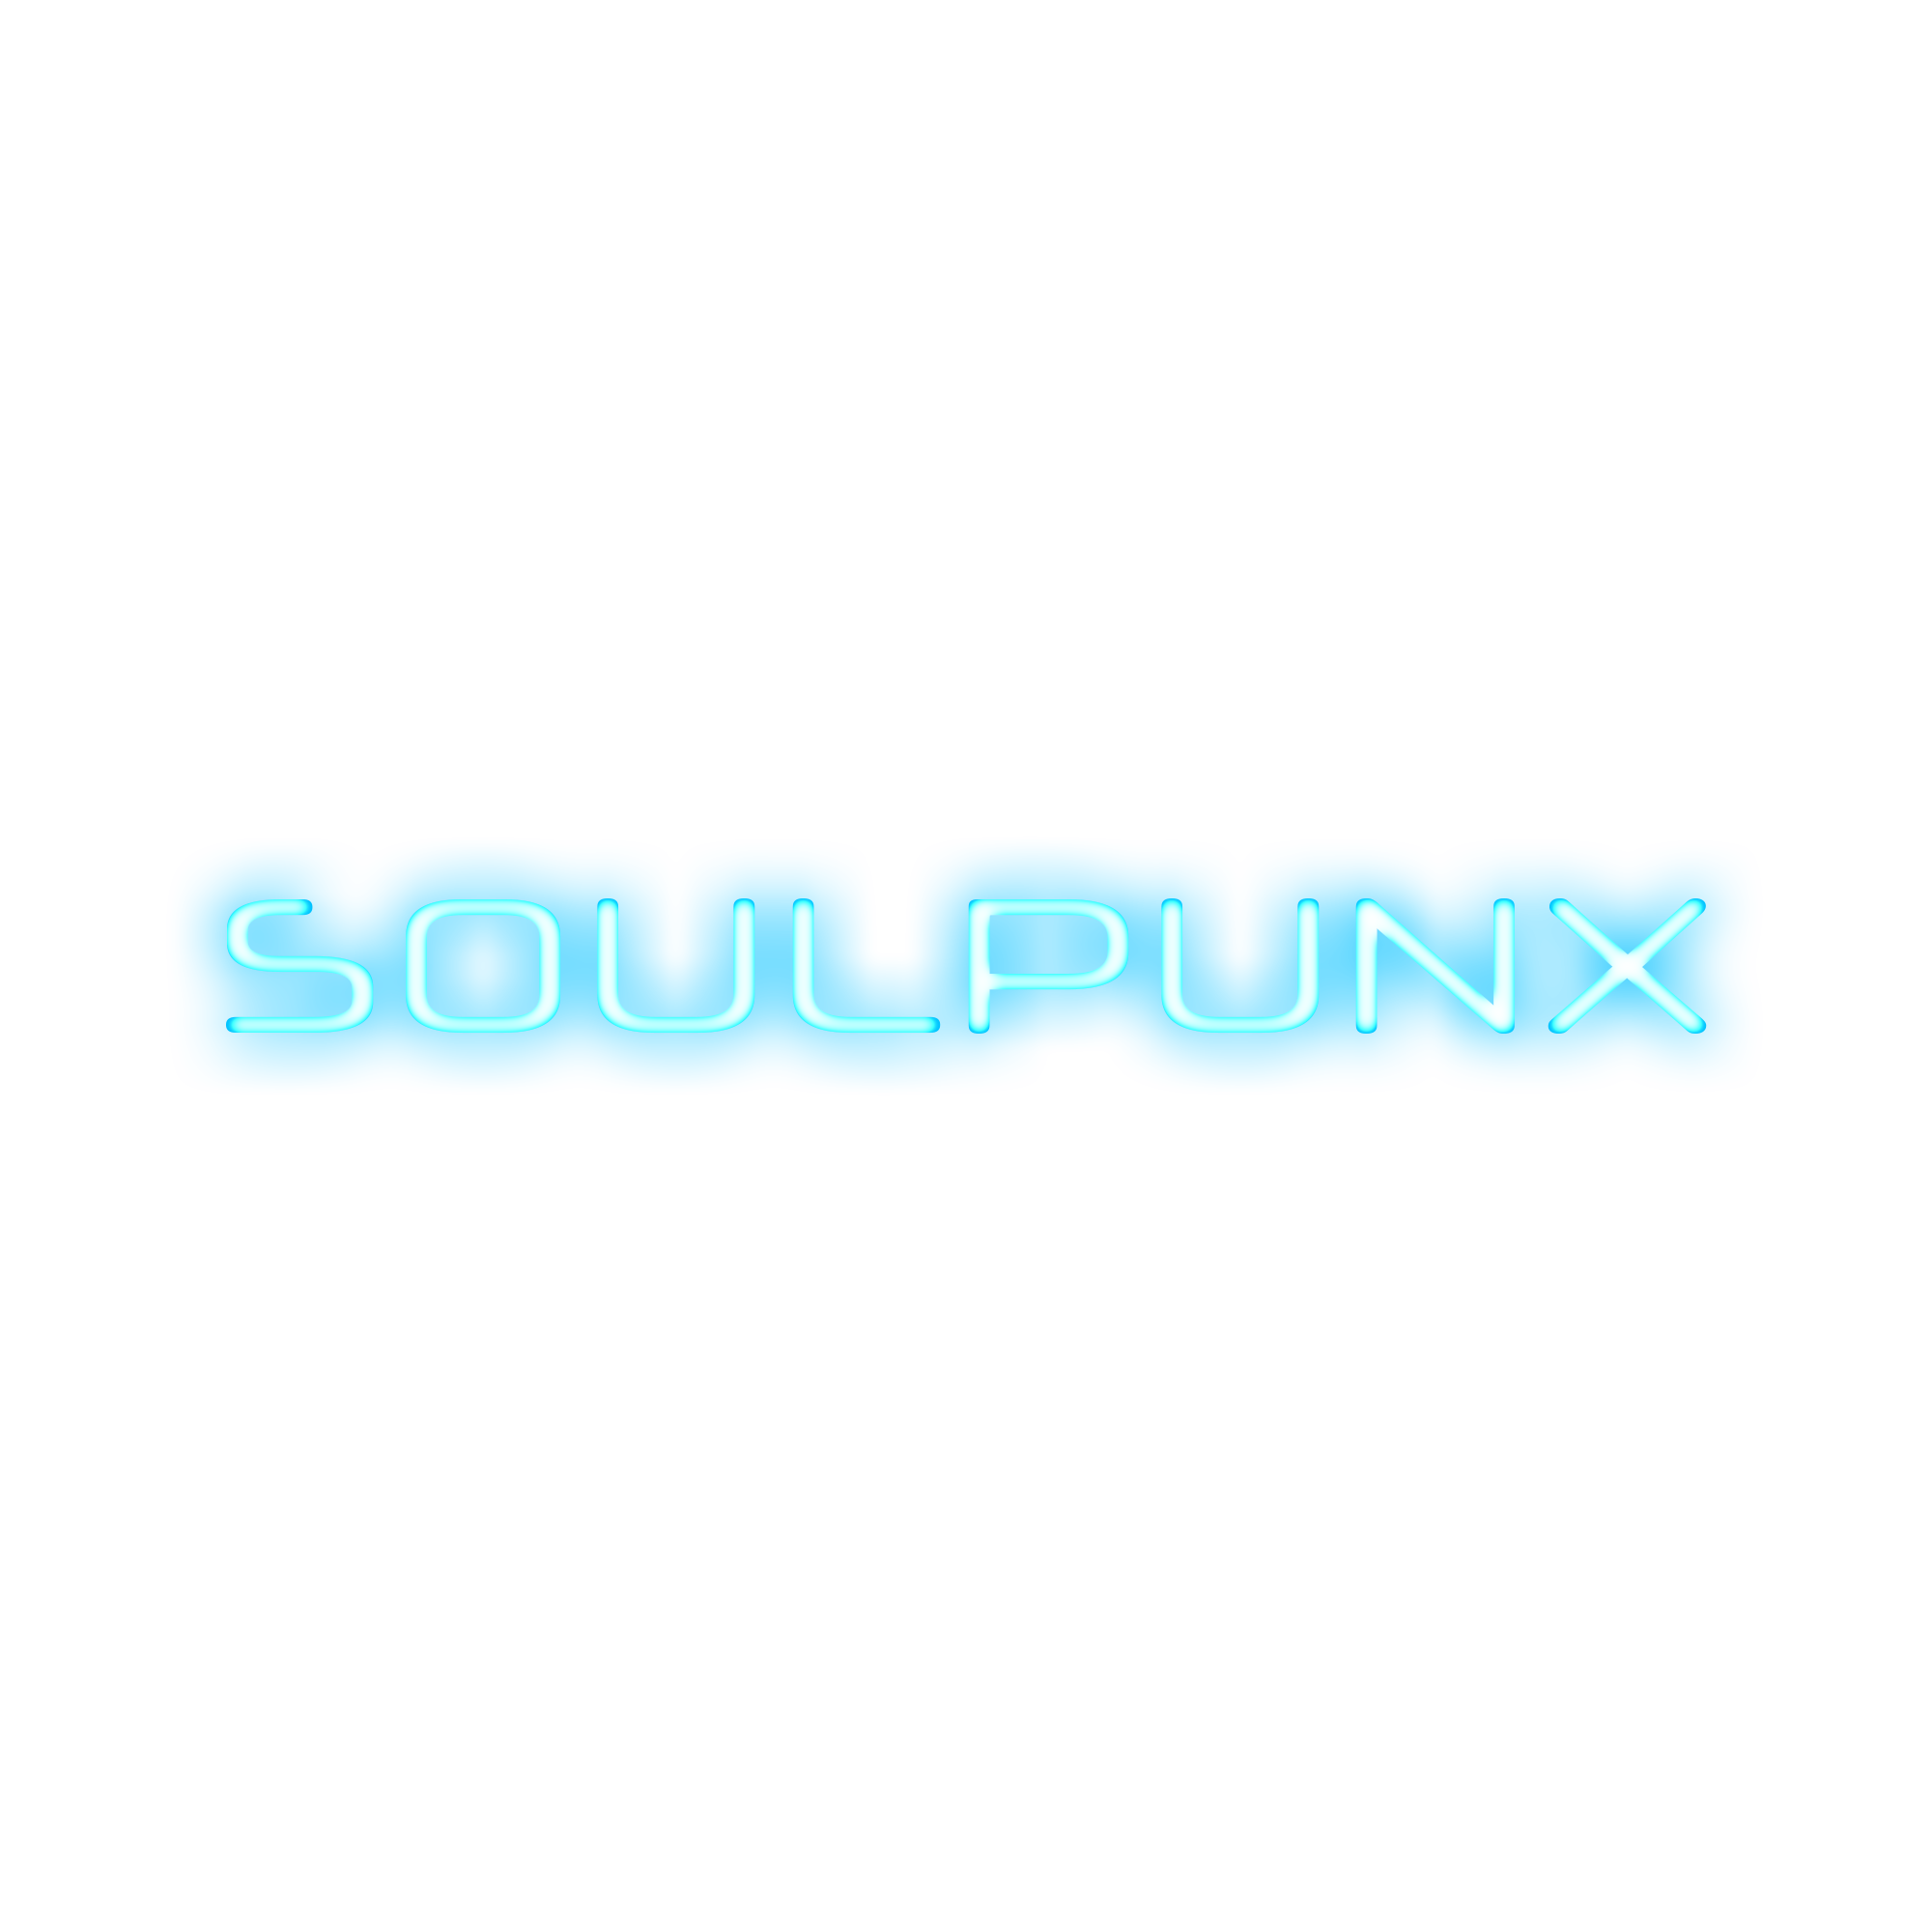 Soulpunx